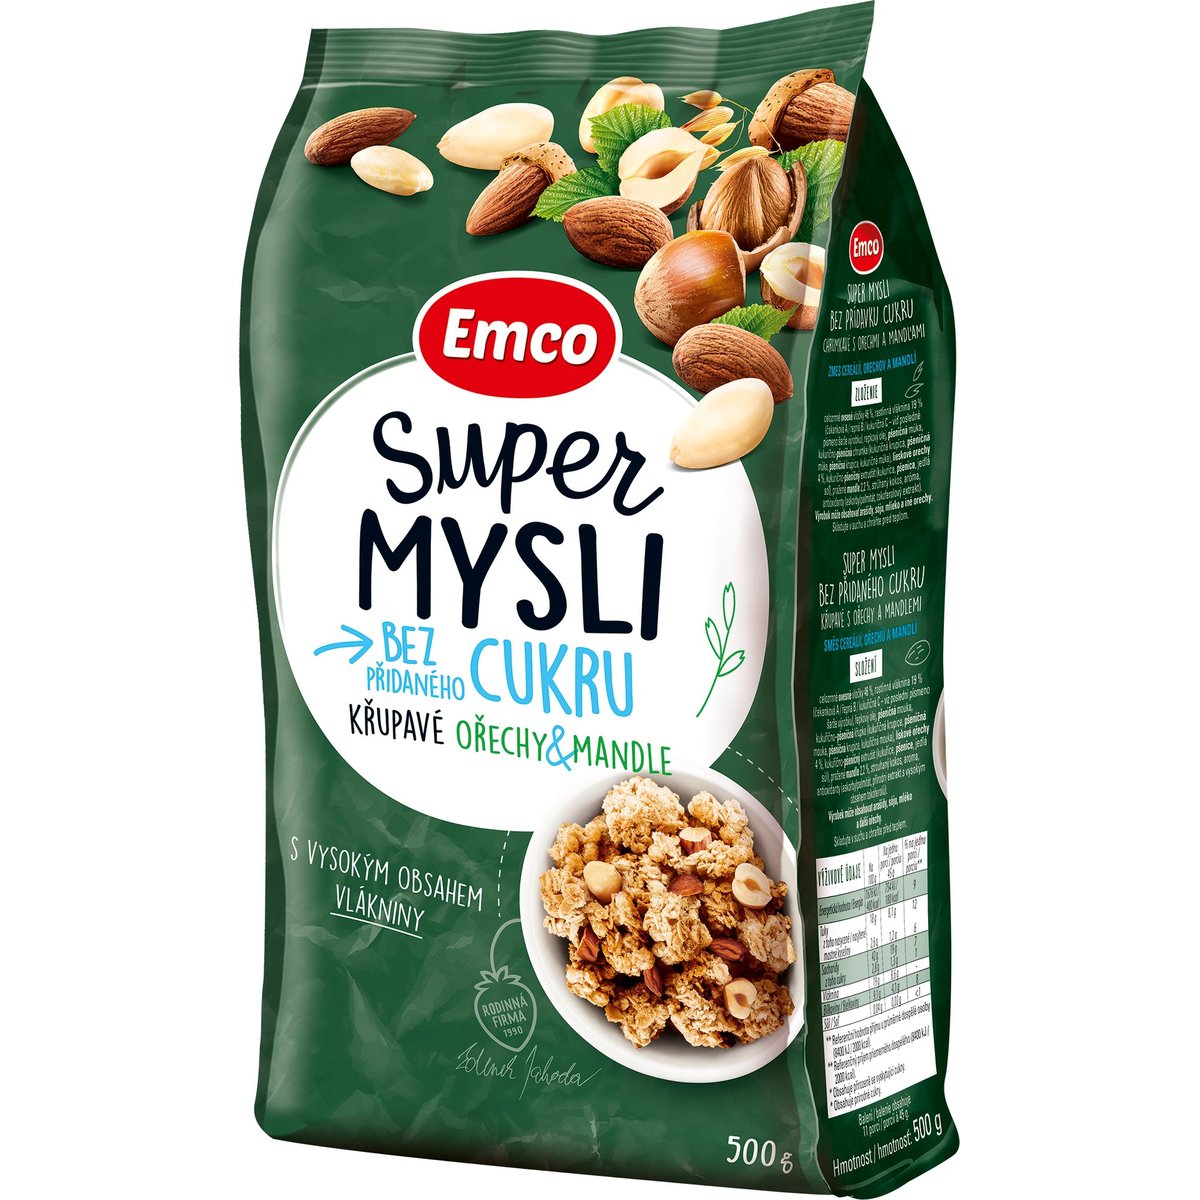 Emco Super mysli bez přidaného cukru Ořechy & mandle